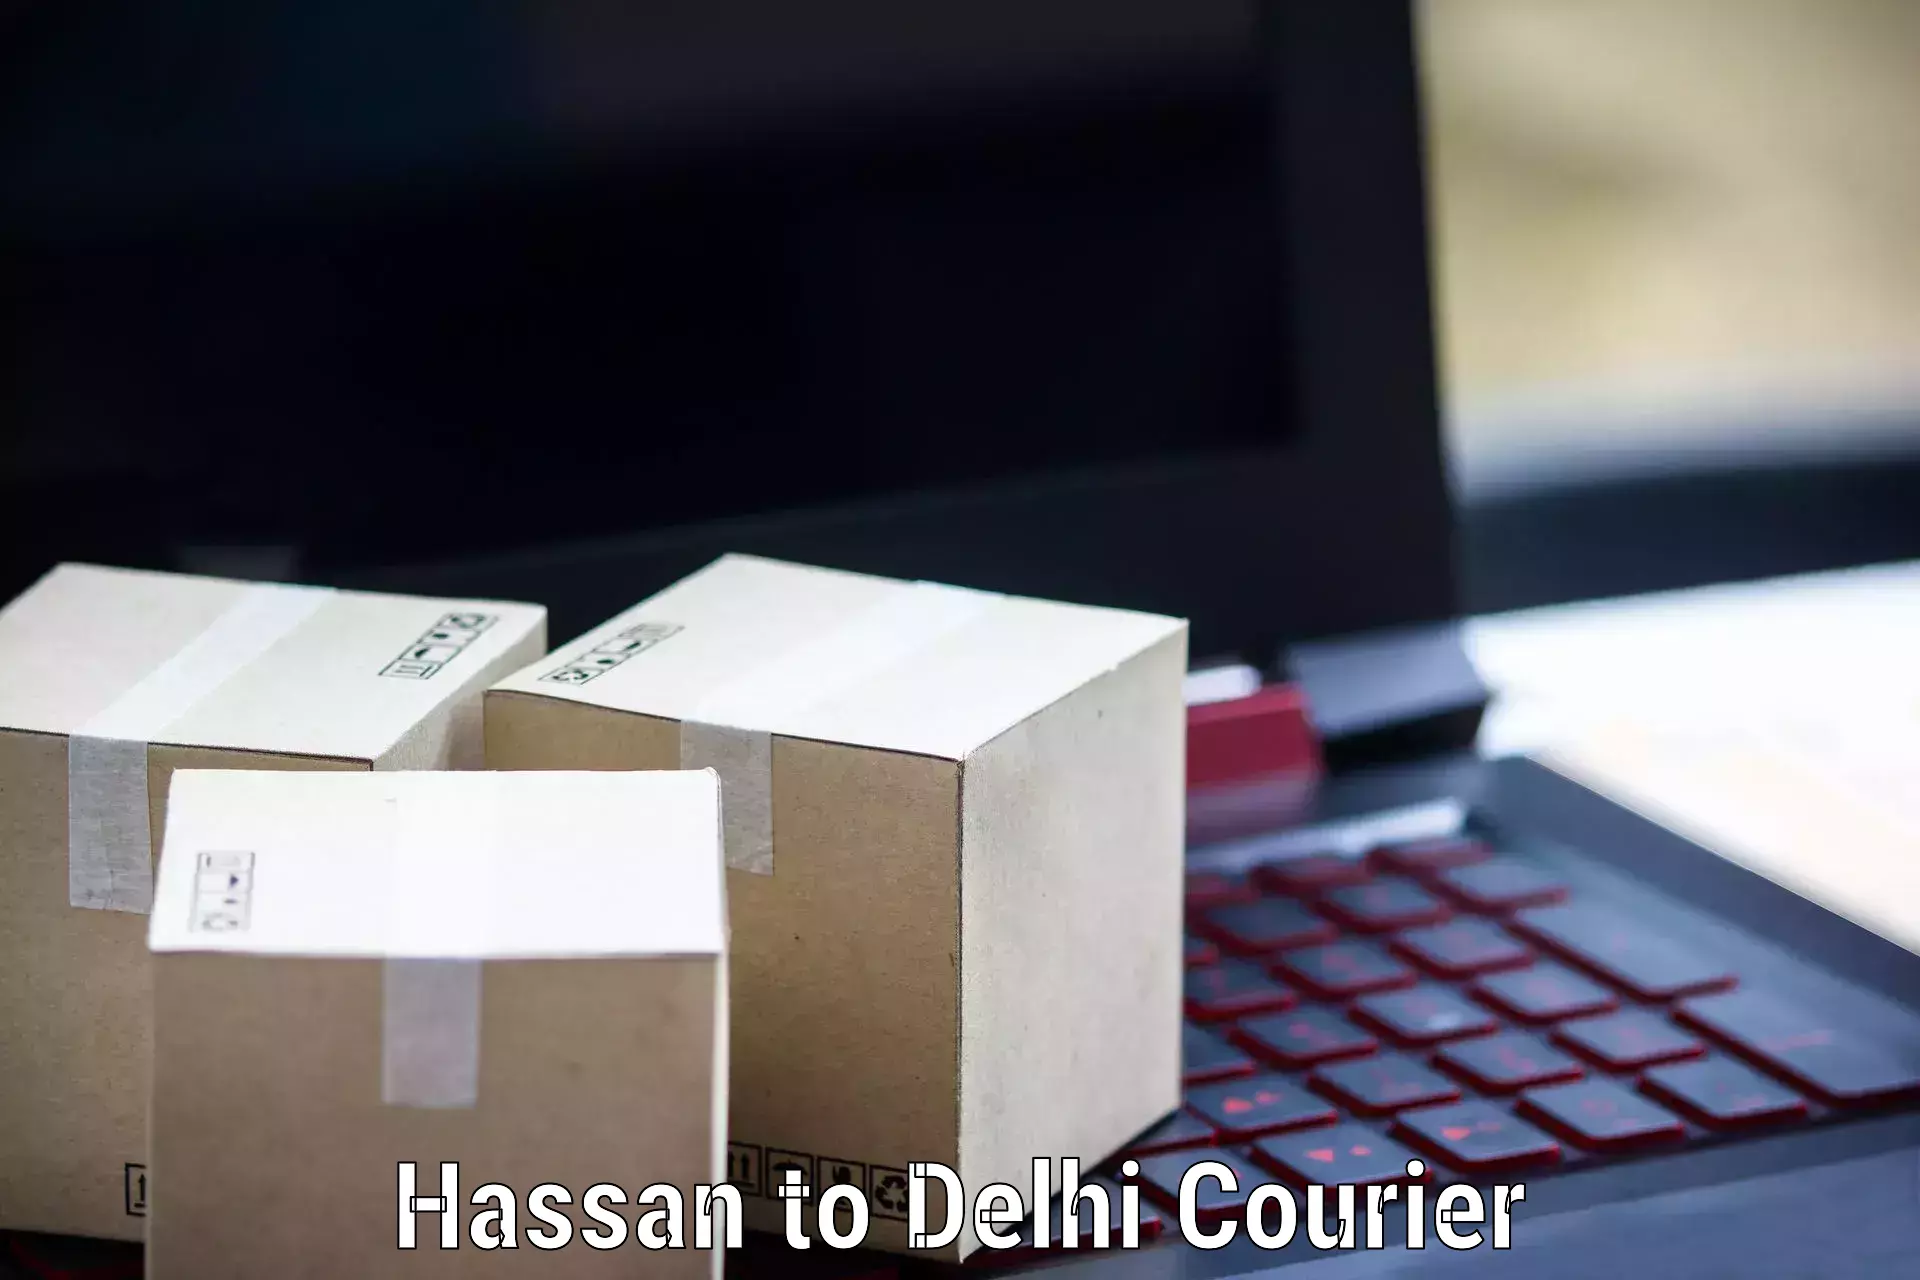 Express logistics service Hassan to NIT Delhi